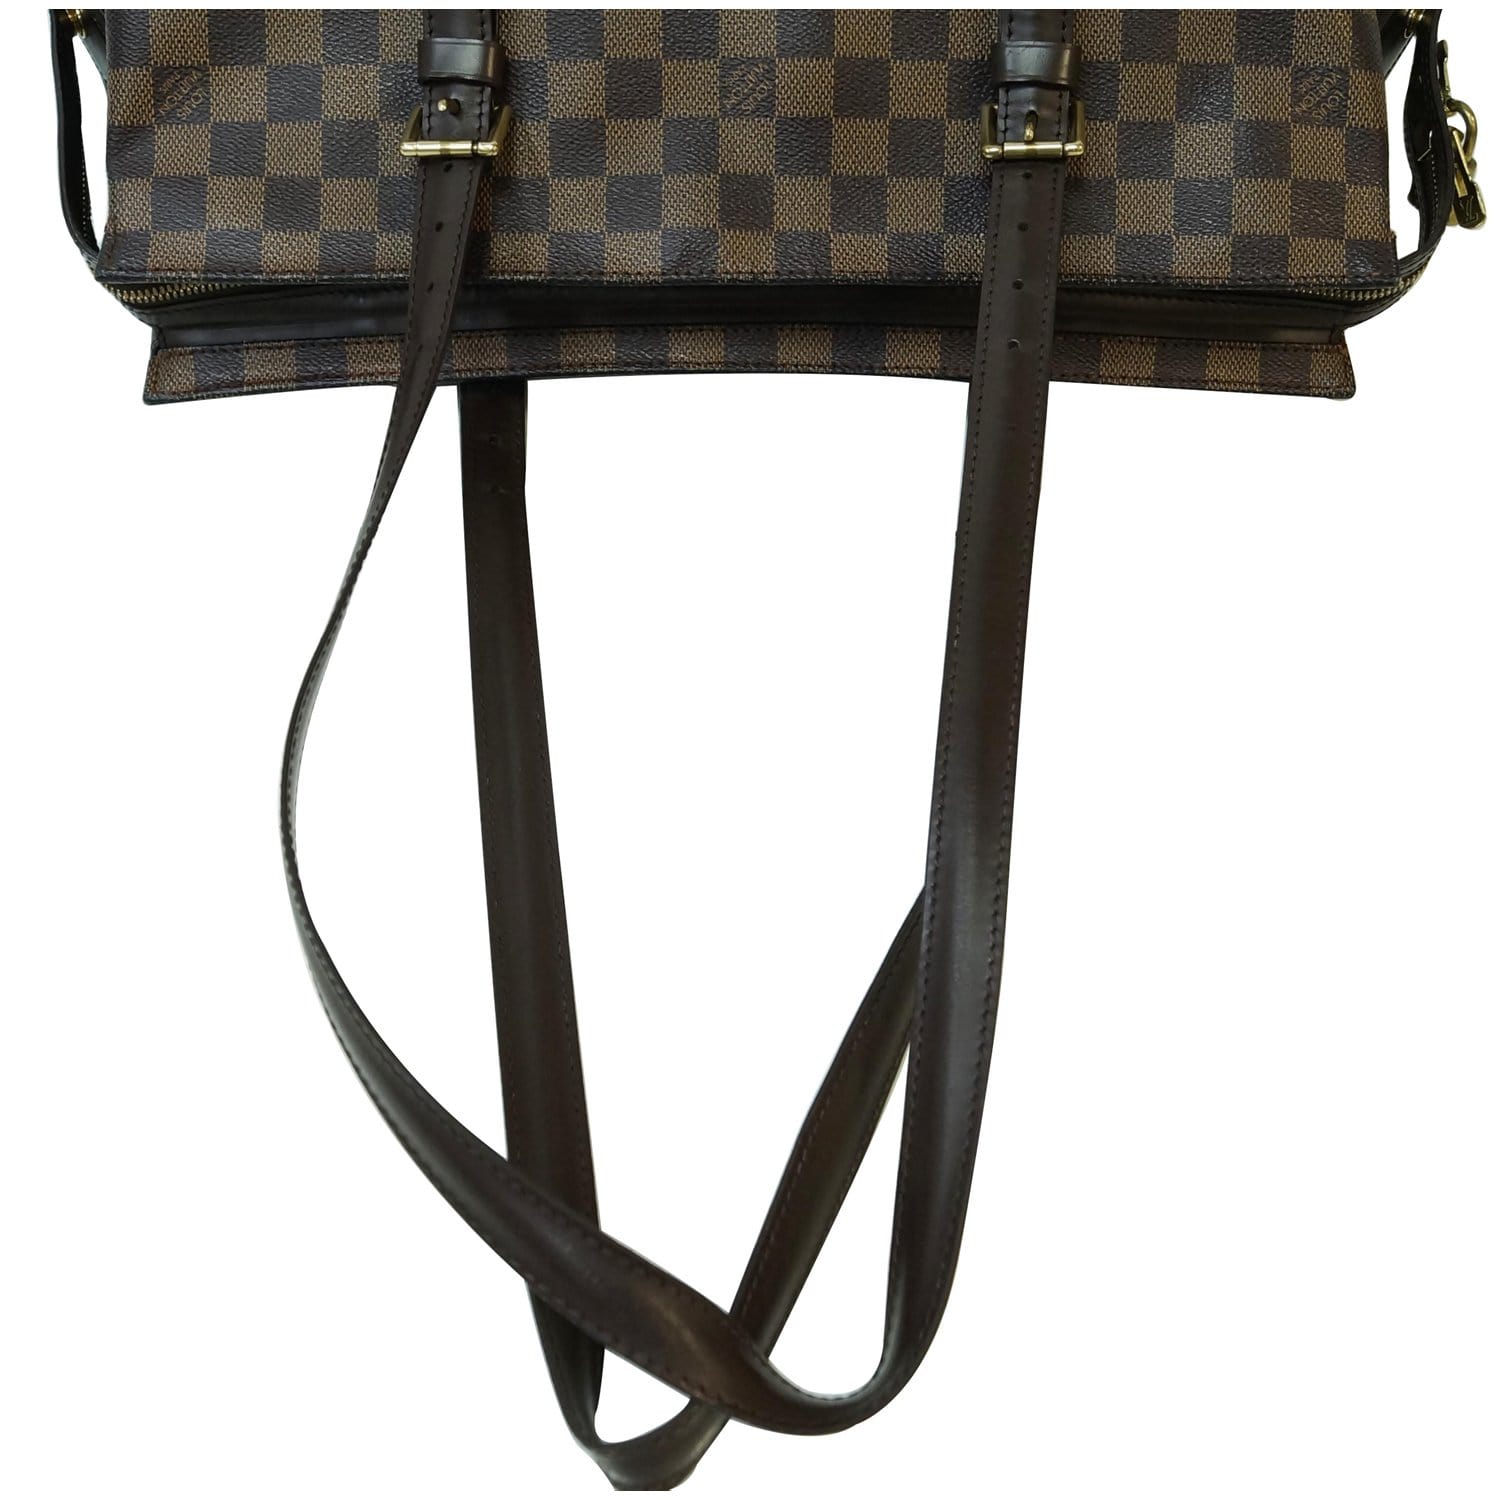 Louis Vuitton Chelsea Tote Bag